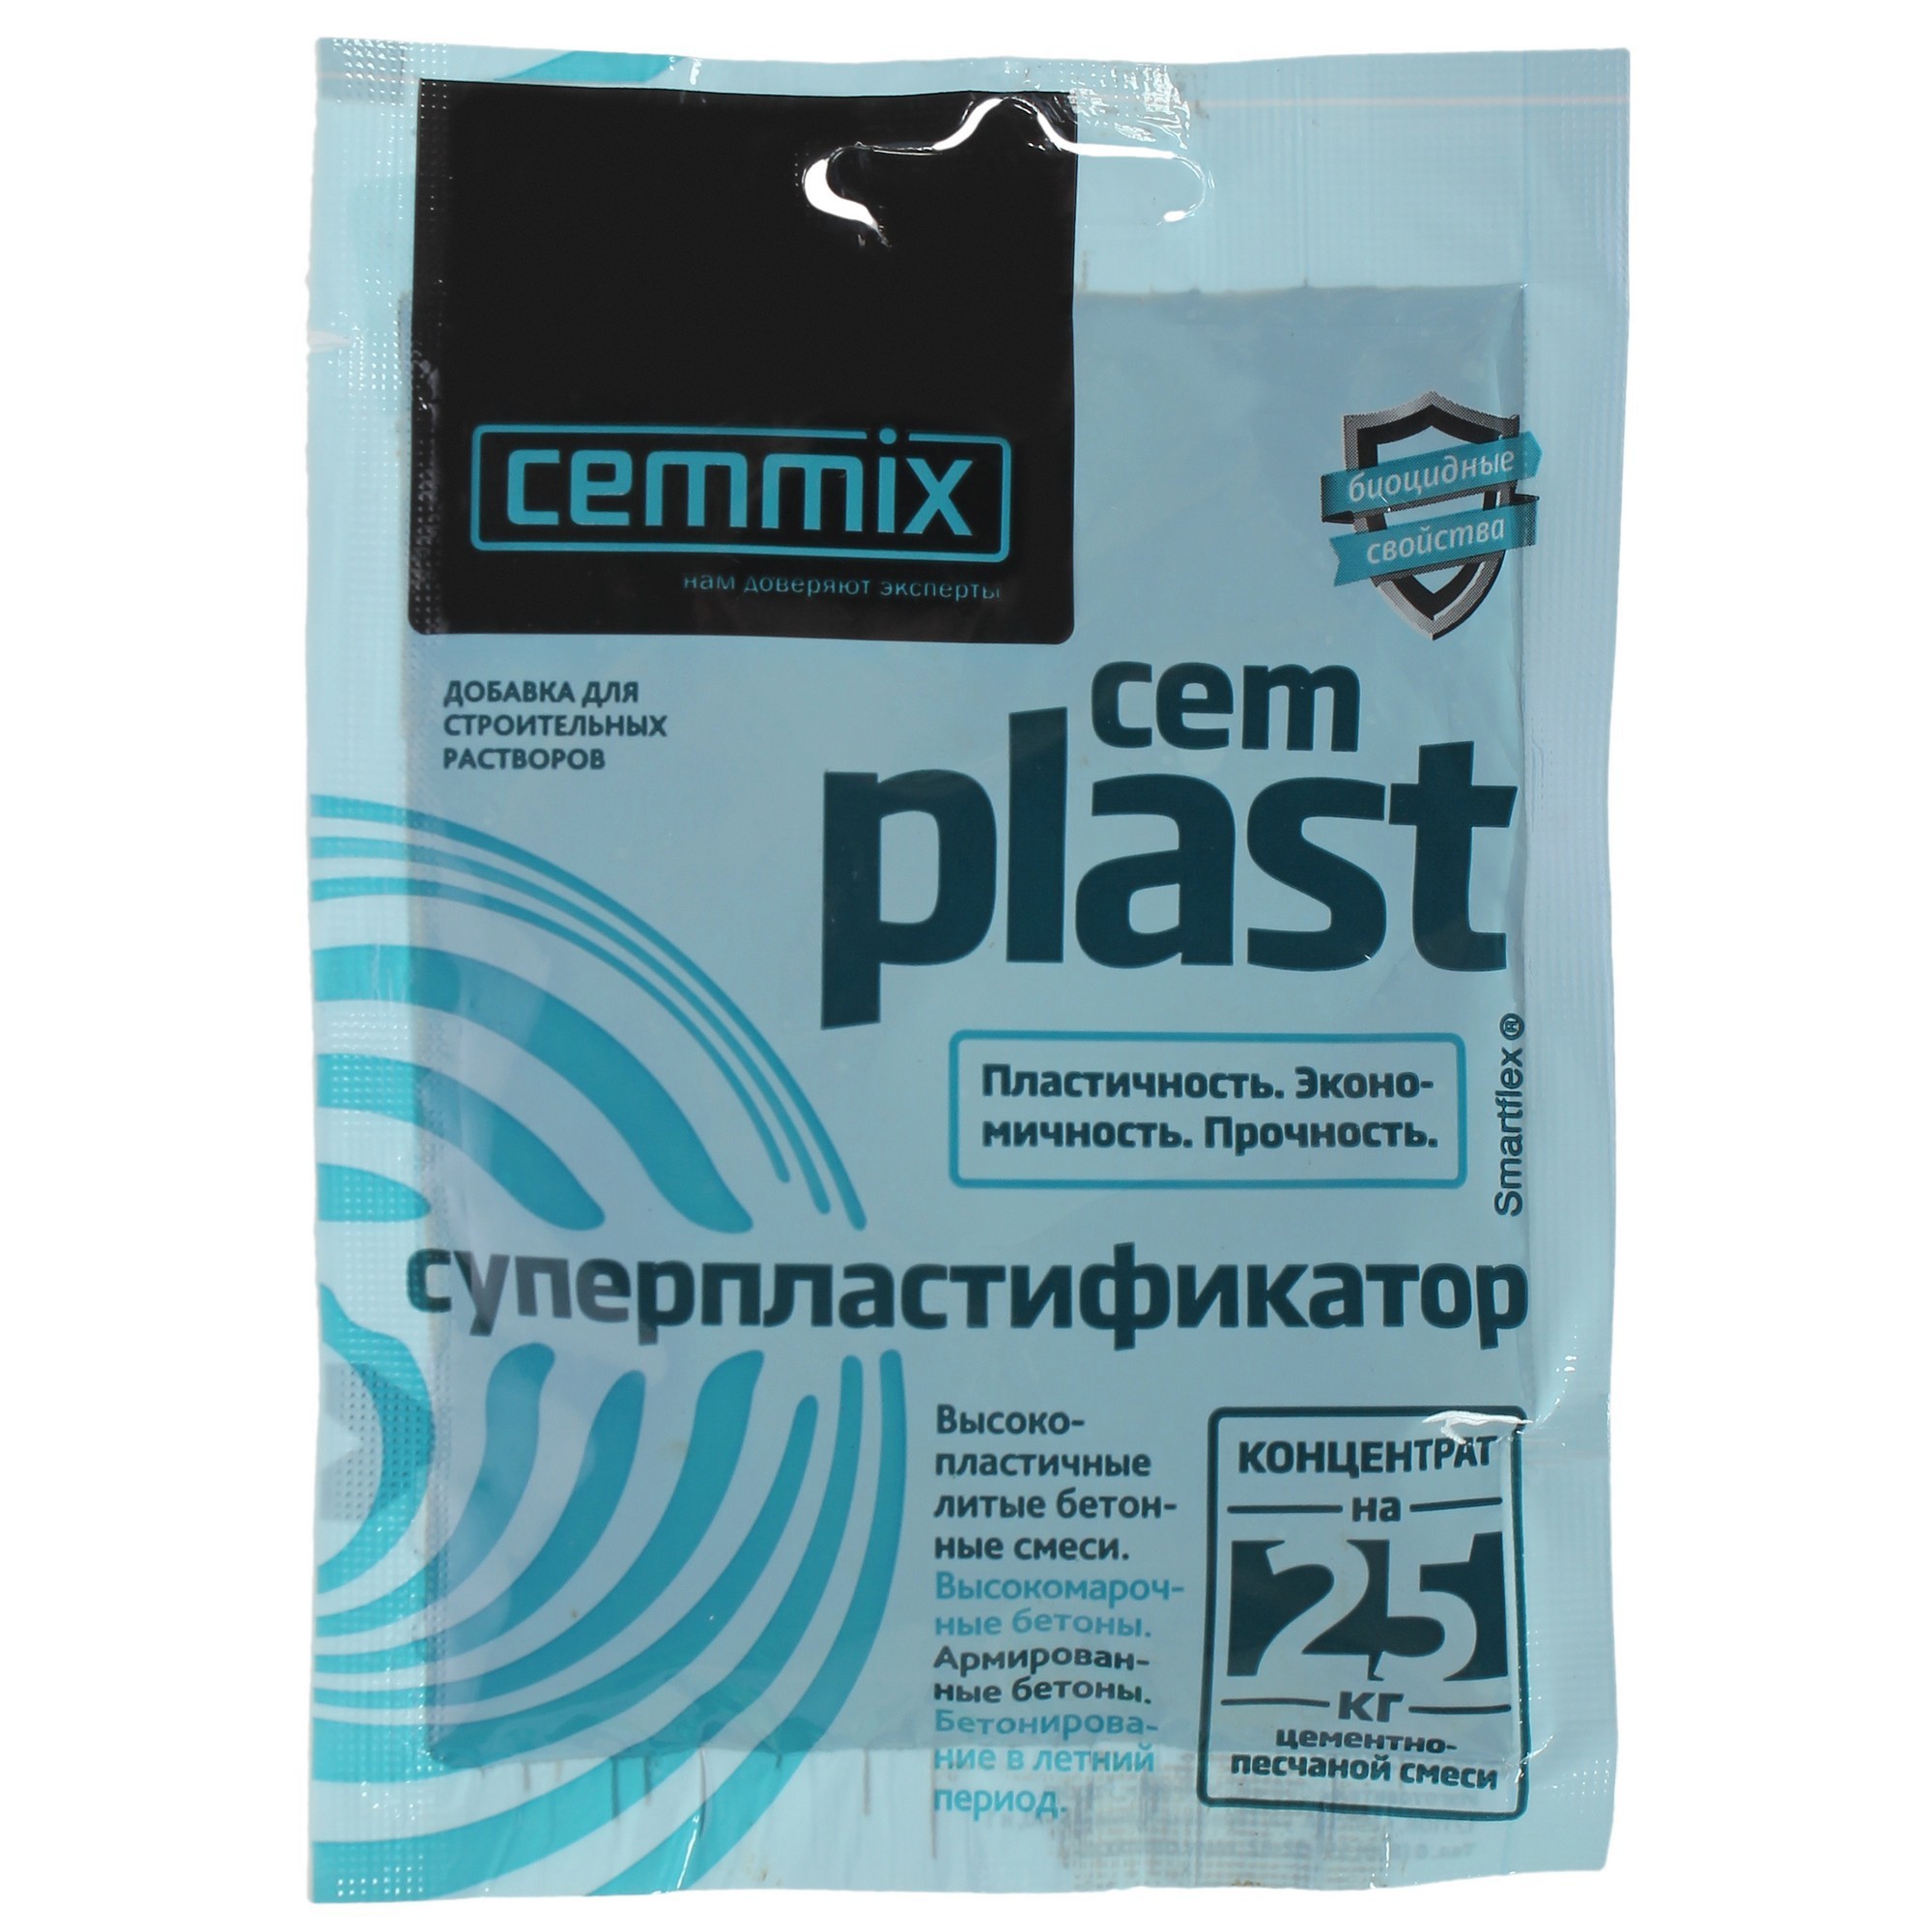 82014228 Суперпластификатор CemPlast, концентрат, саше STLM-0017630 CEMMIX